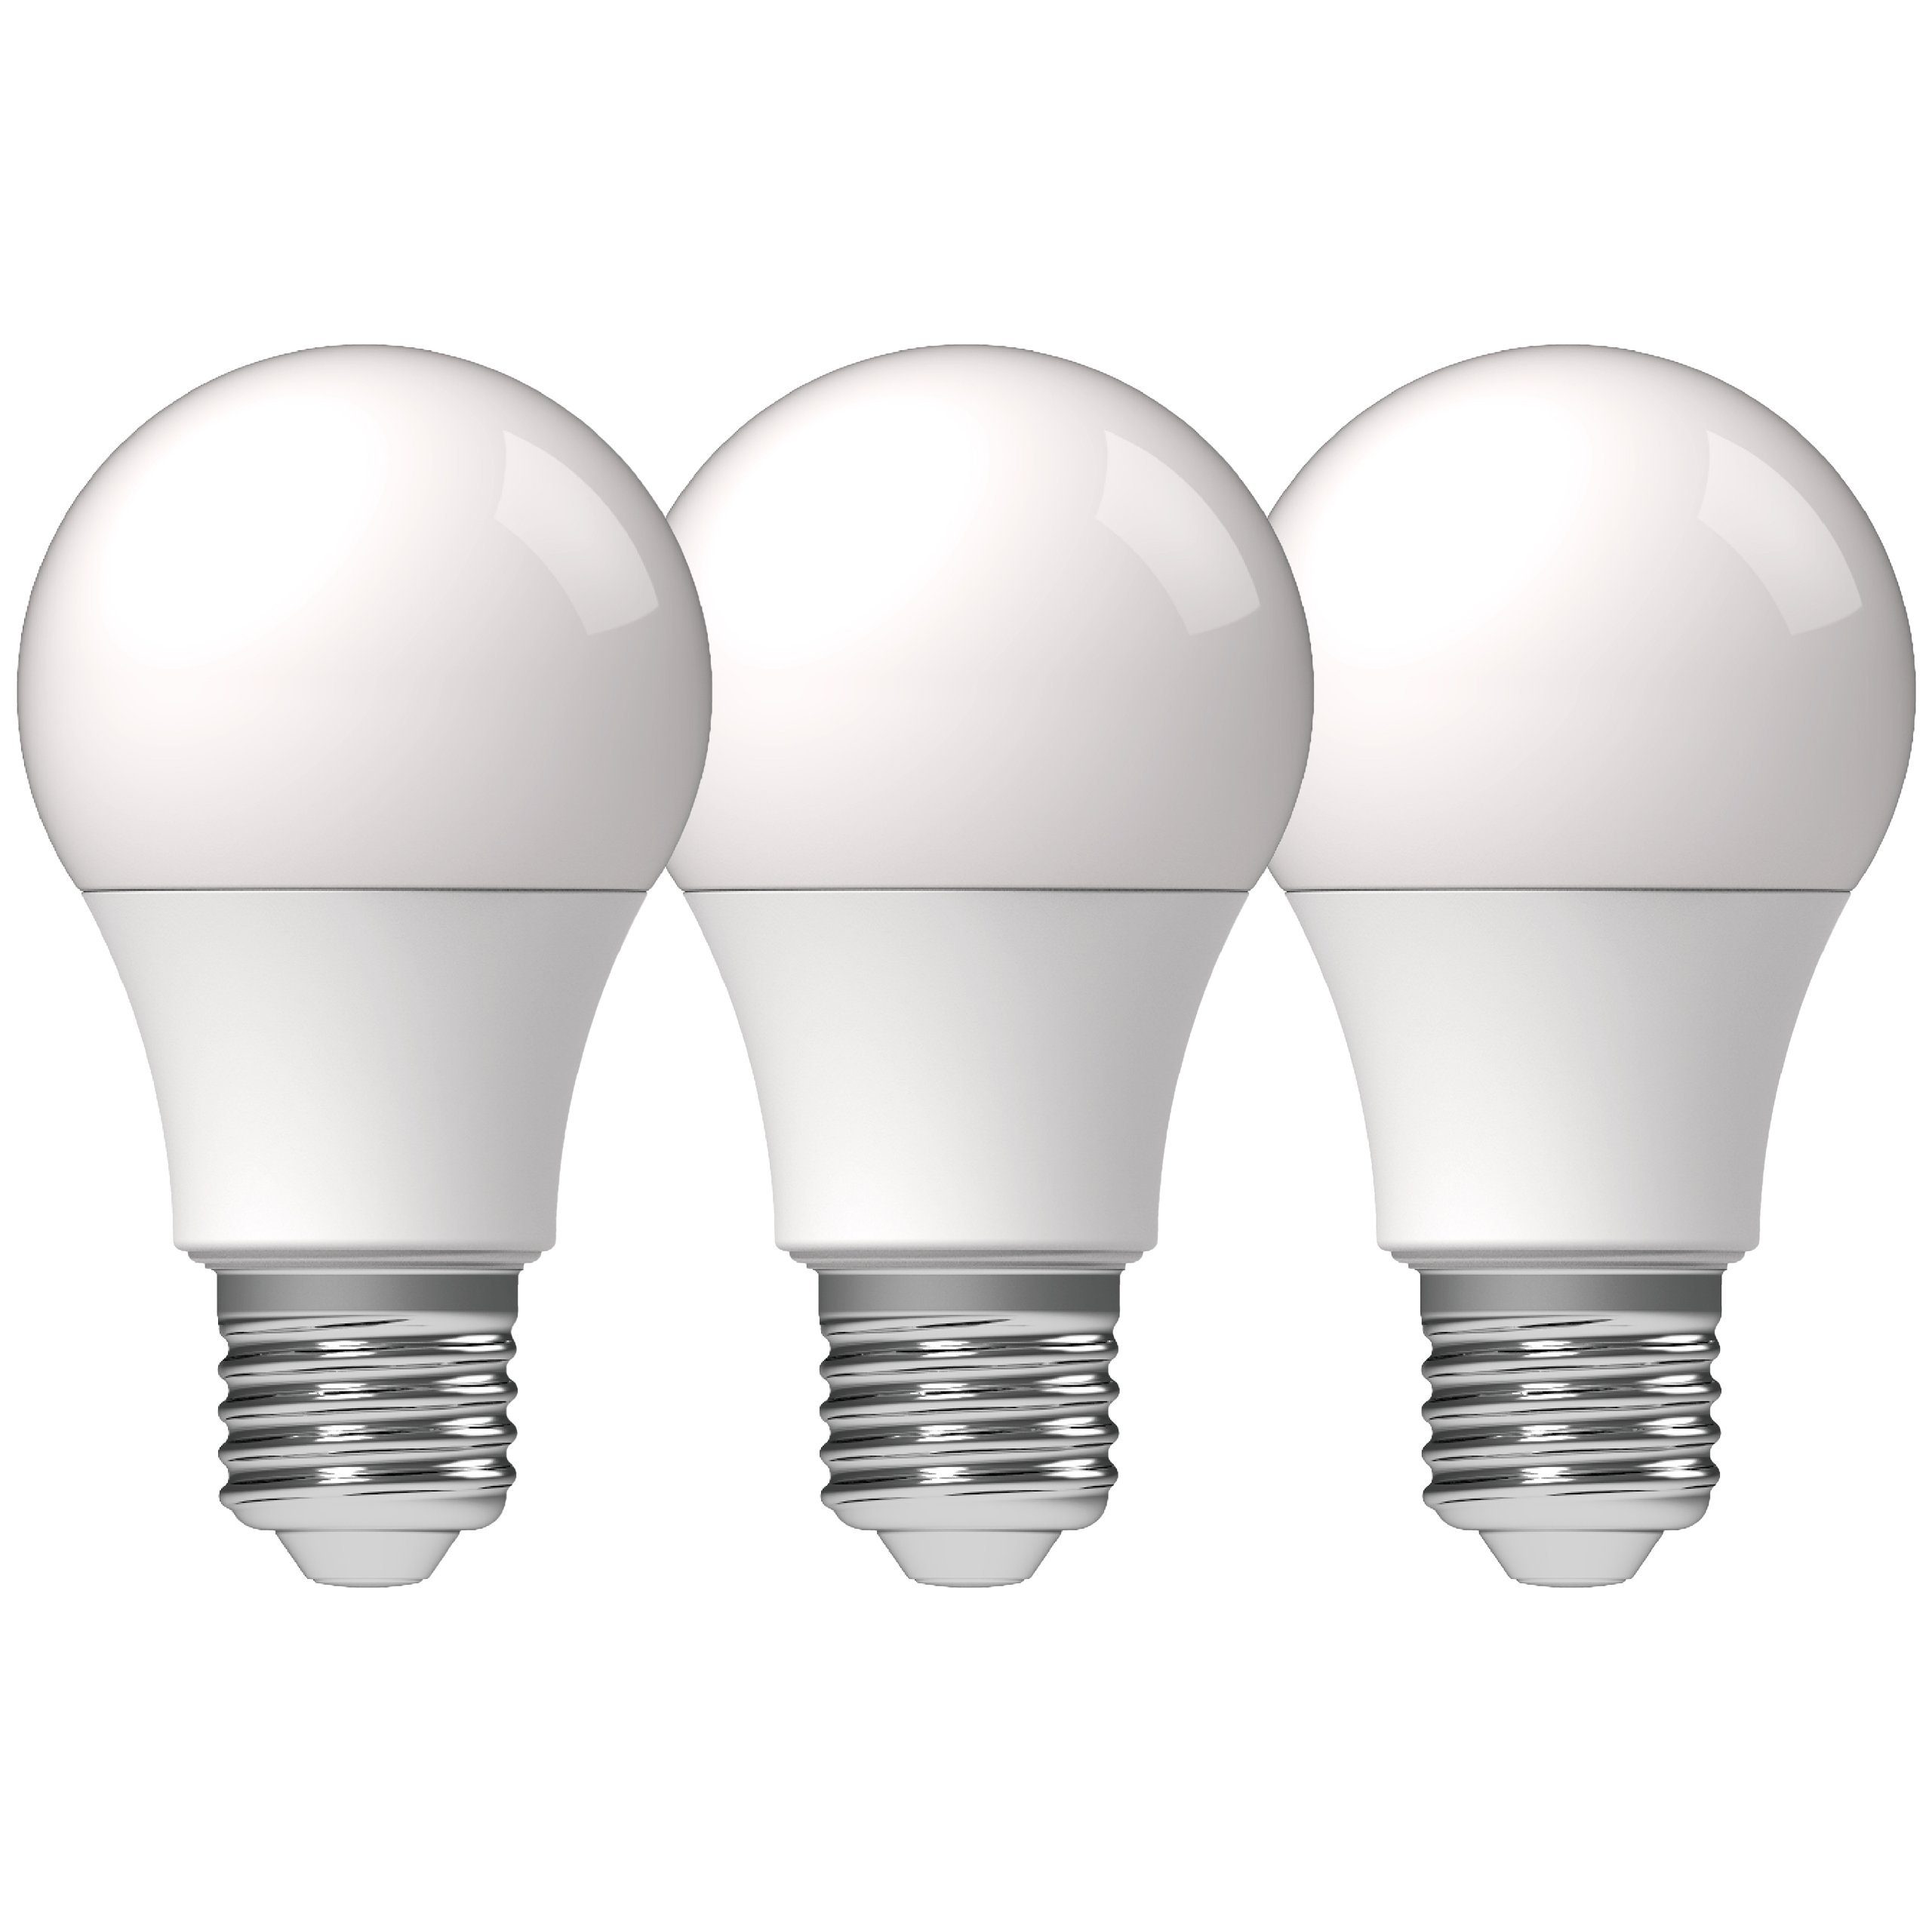 LED's light LED-Leuchtmittel 0620172 LED Birne, E27, E27 13,0W warmweiß Opal A60 3-Pack